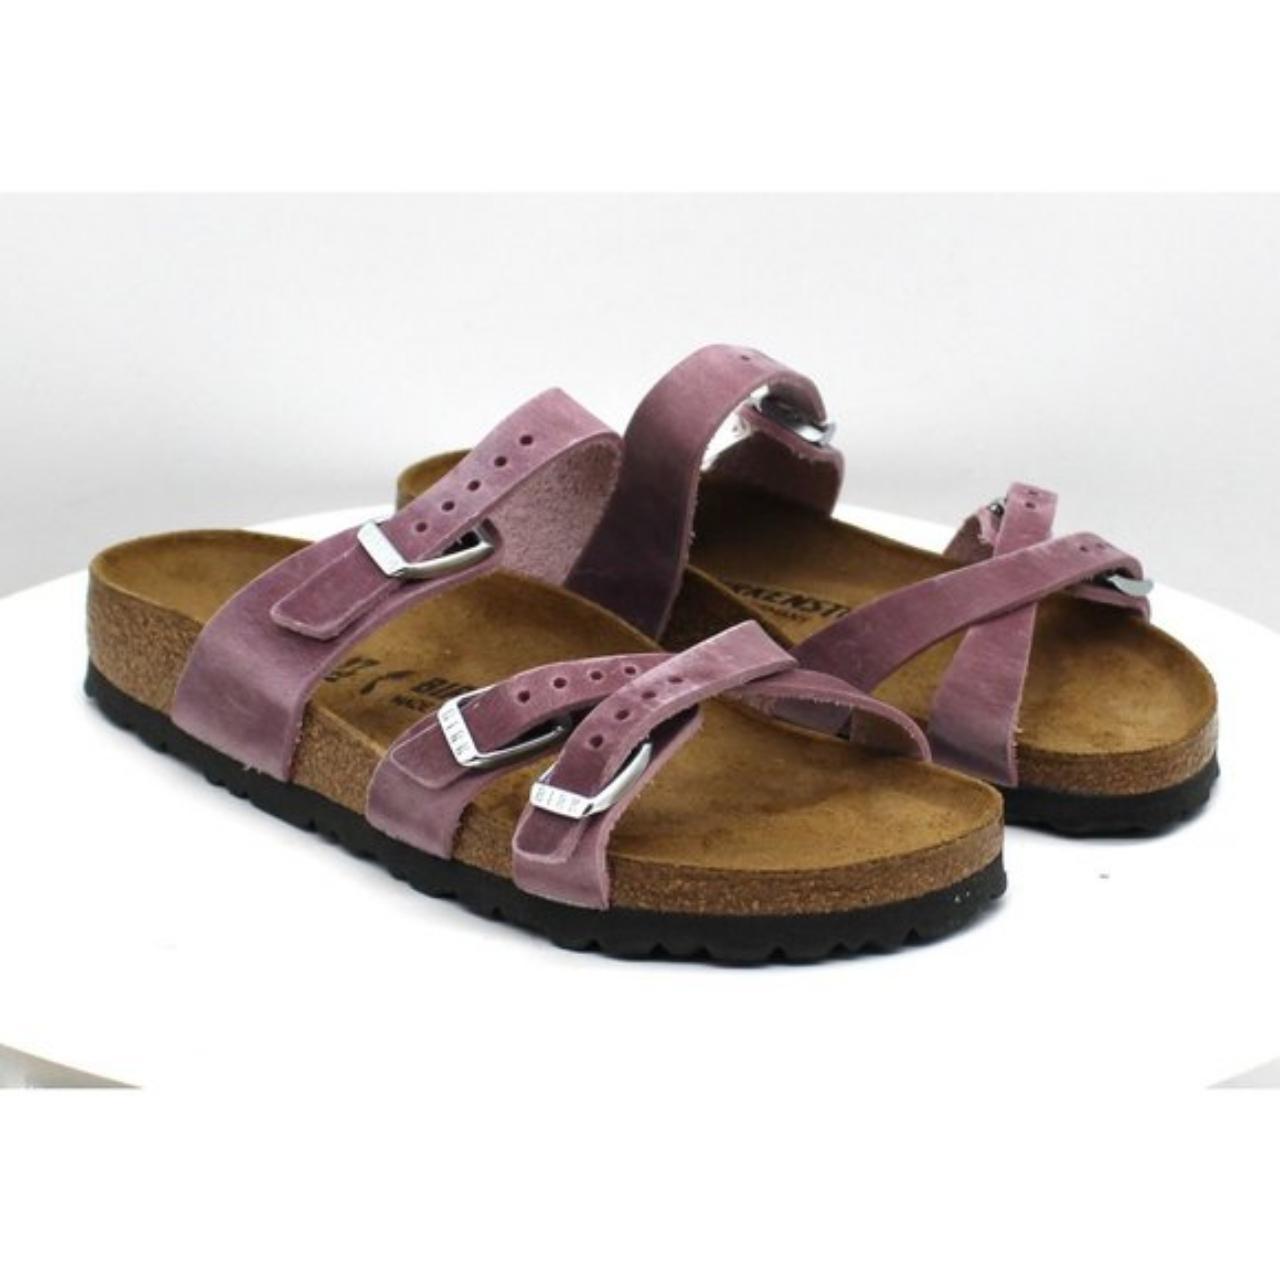 Product Image 1 - Women's Birkenstock Franca Slide Sandal

Built